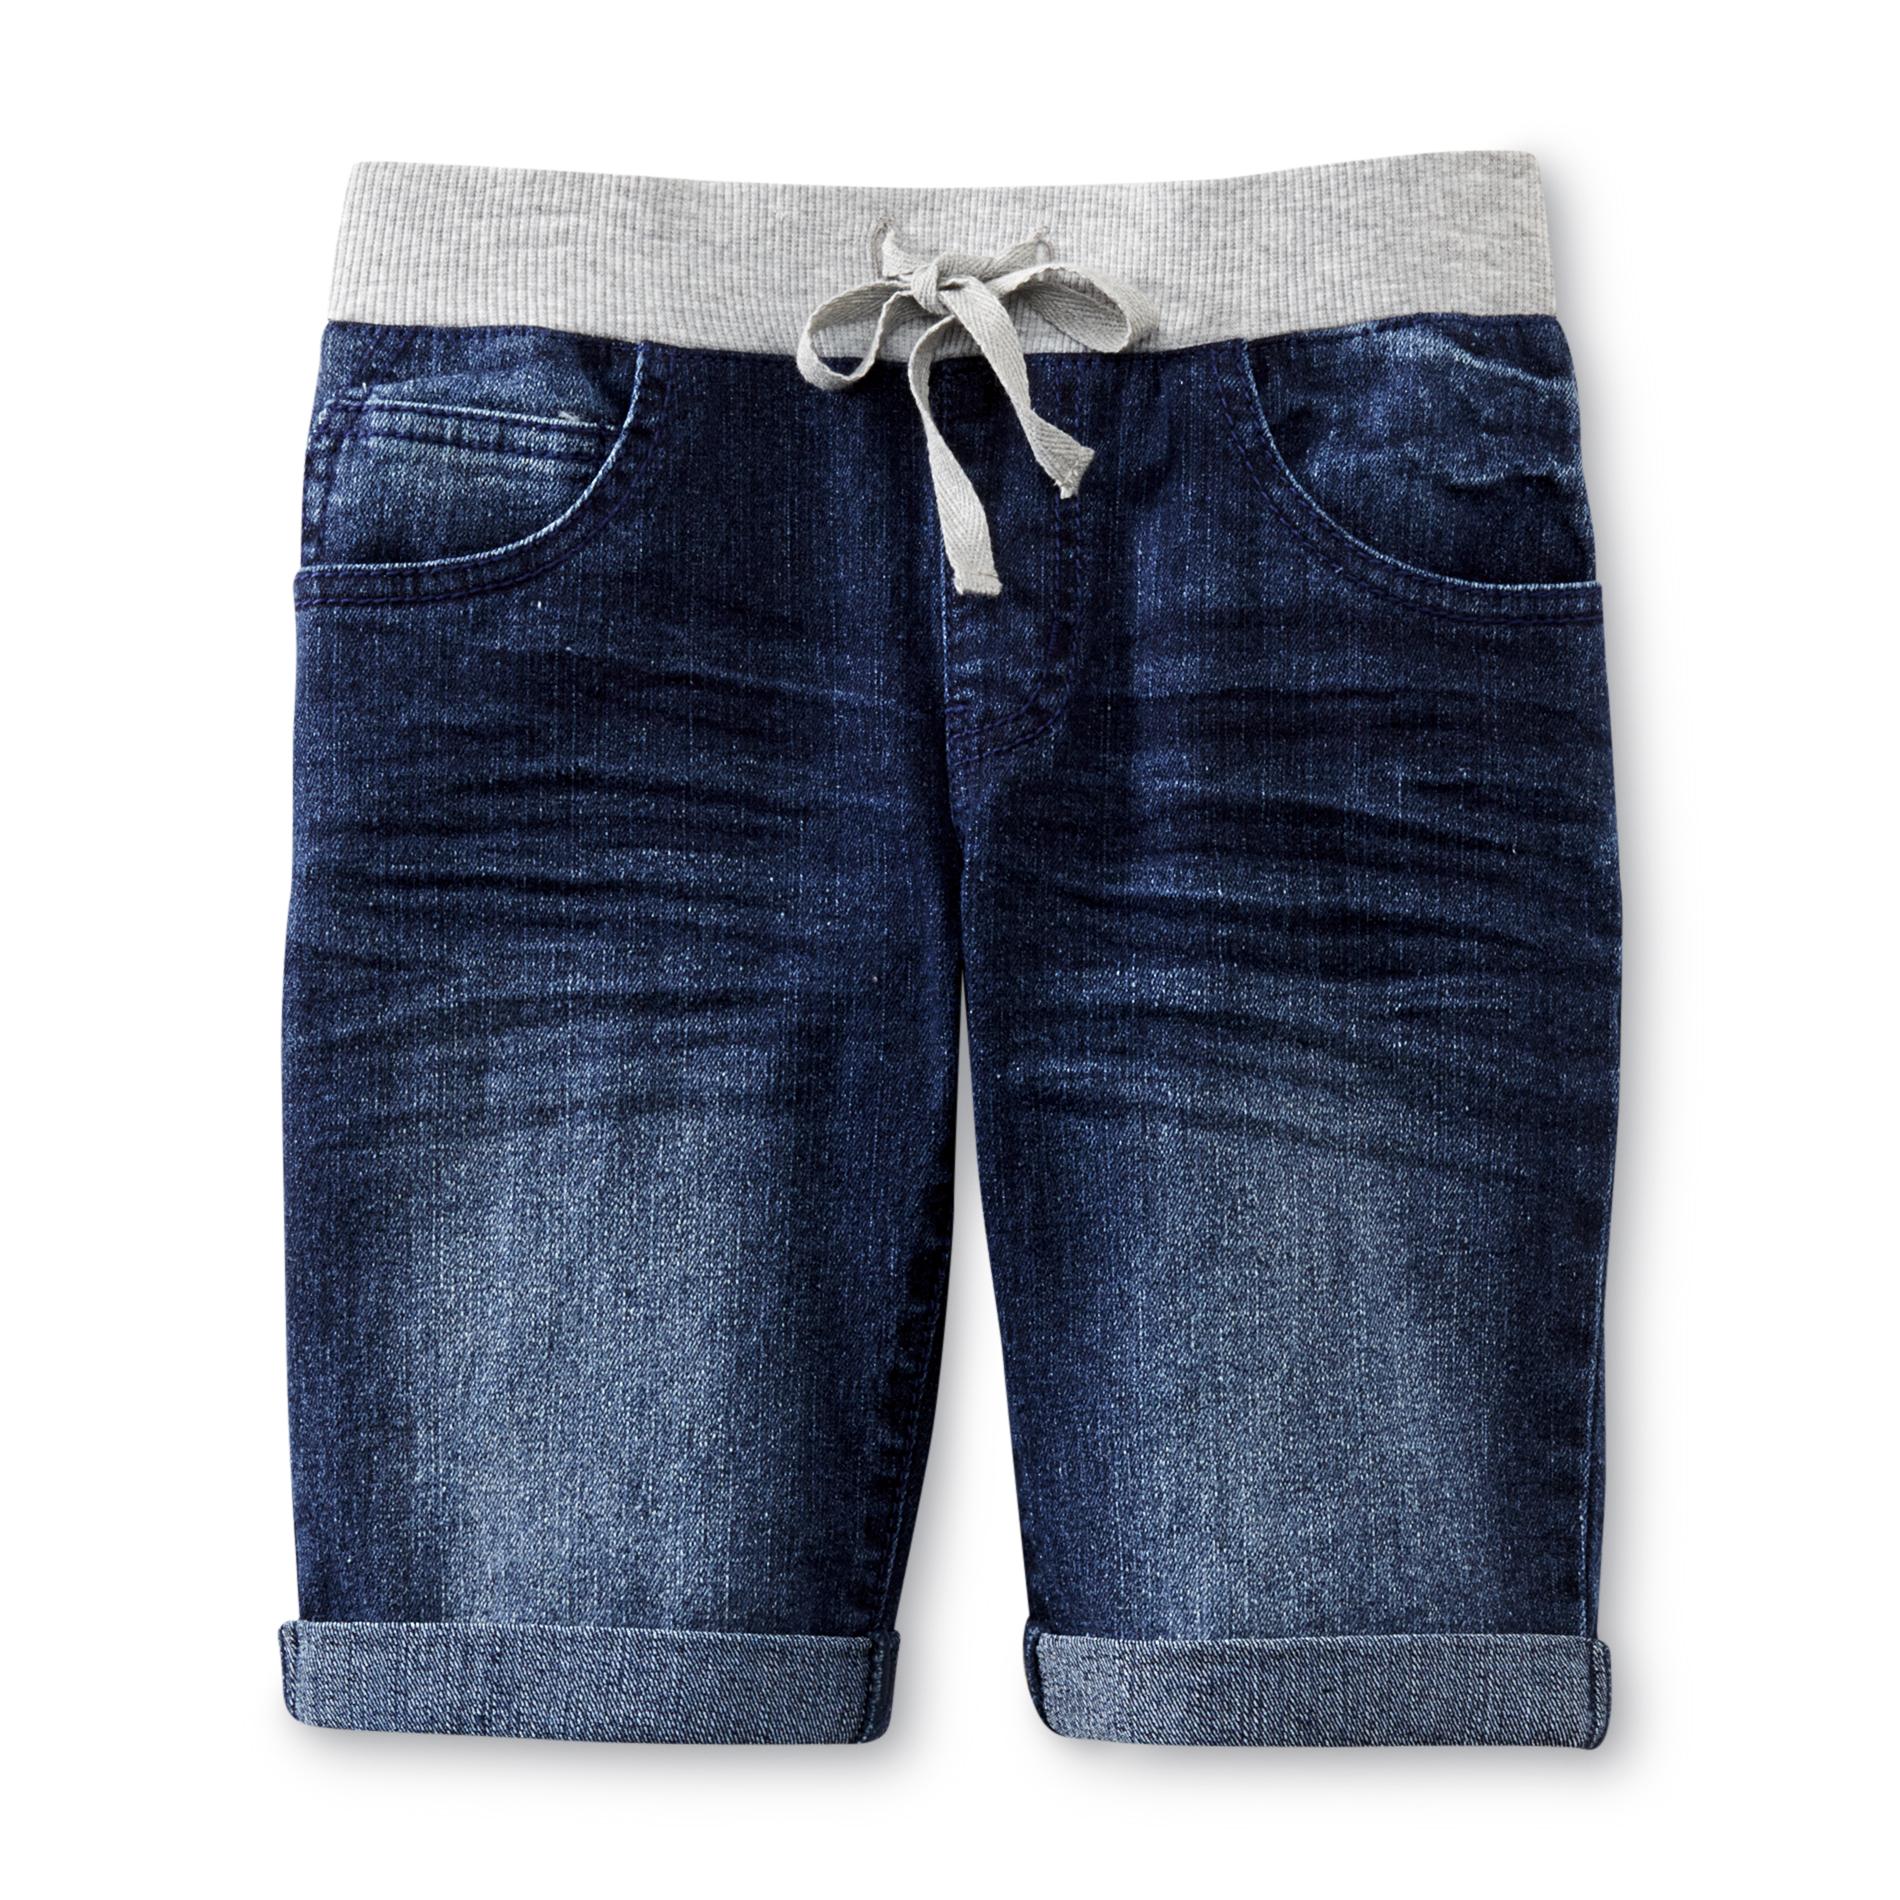 CRB Girl Girl's Denim Shorts - Dark Wash